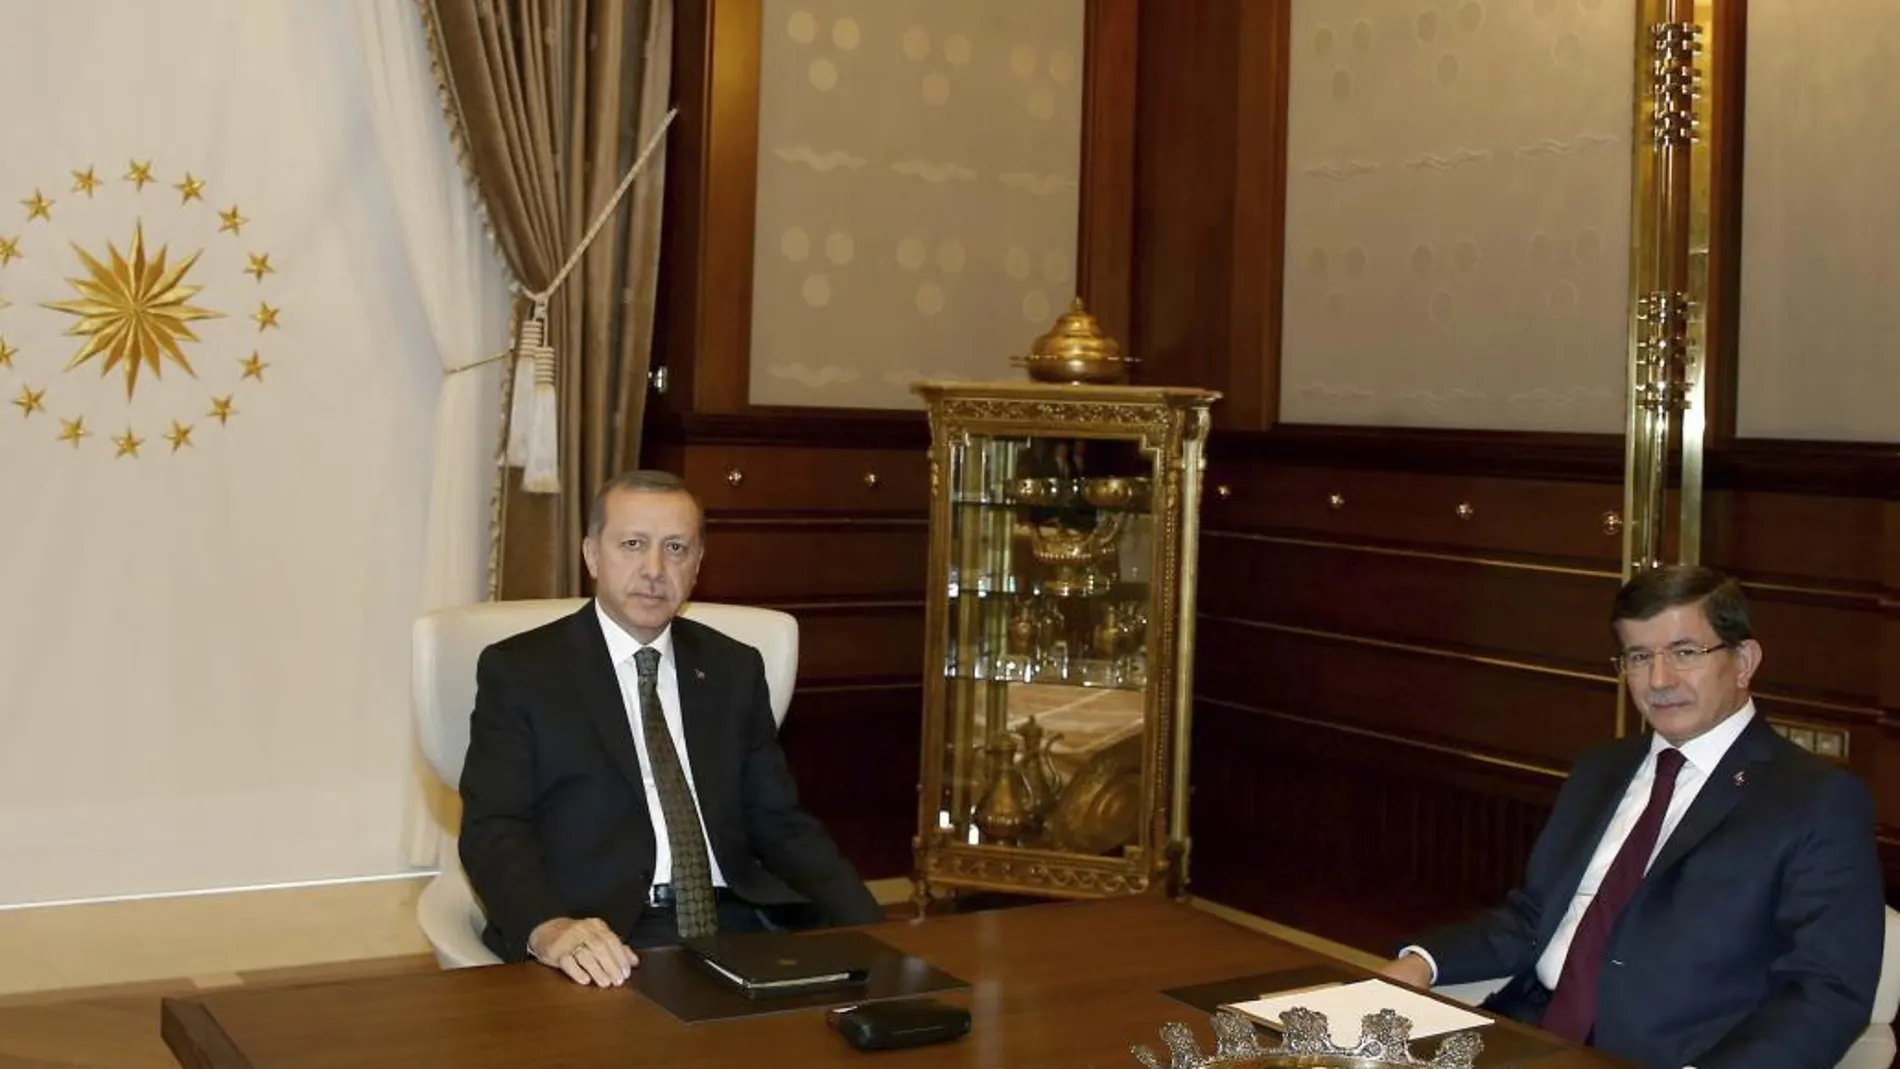 Fotografía facilitada por el gabinete de prensa presidencial turco que muestra al presidente turco, Recep Tayyip Erdogan (i), y su primer ministro, el pasado 20 de agosto